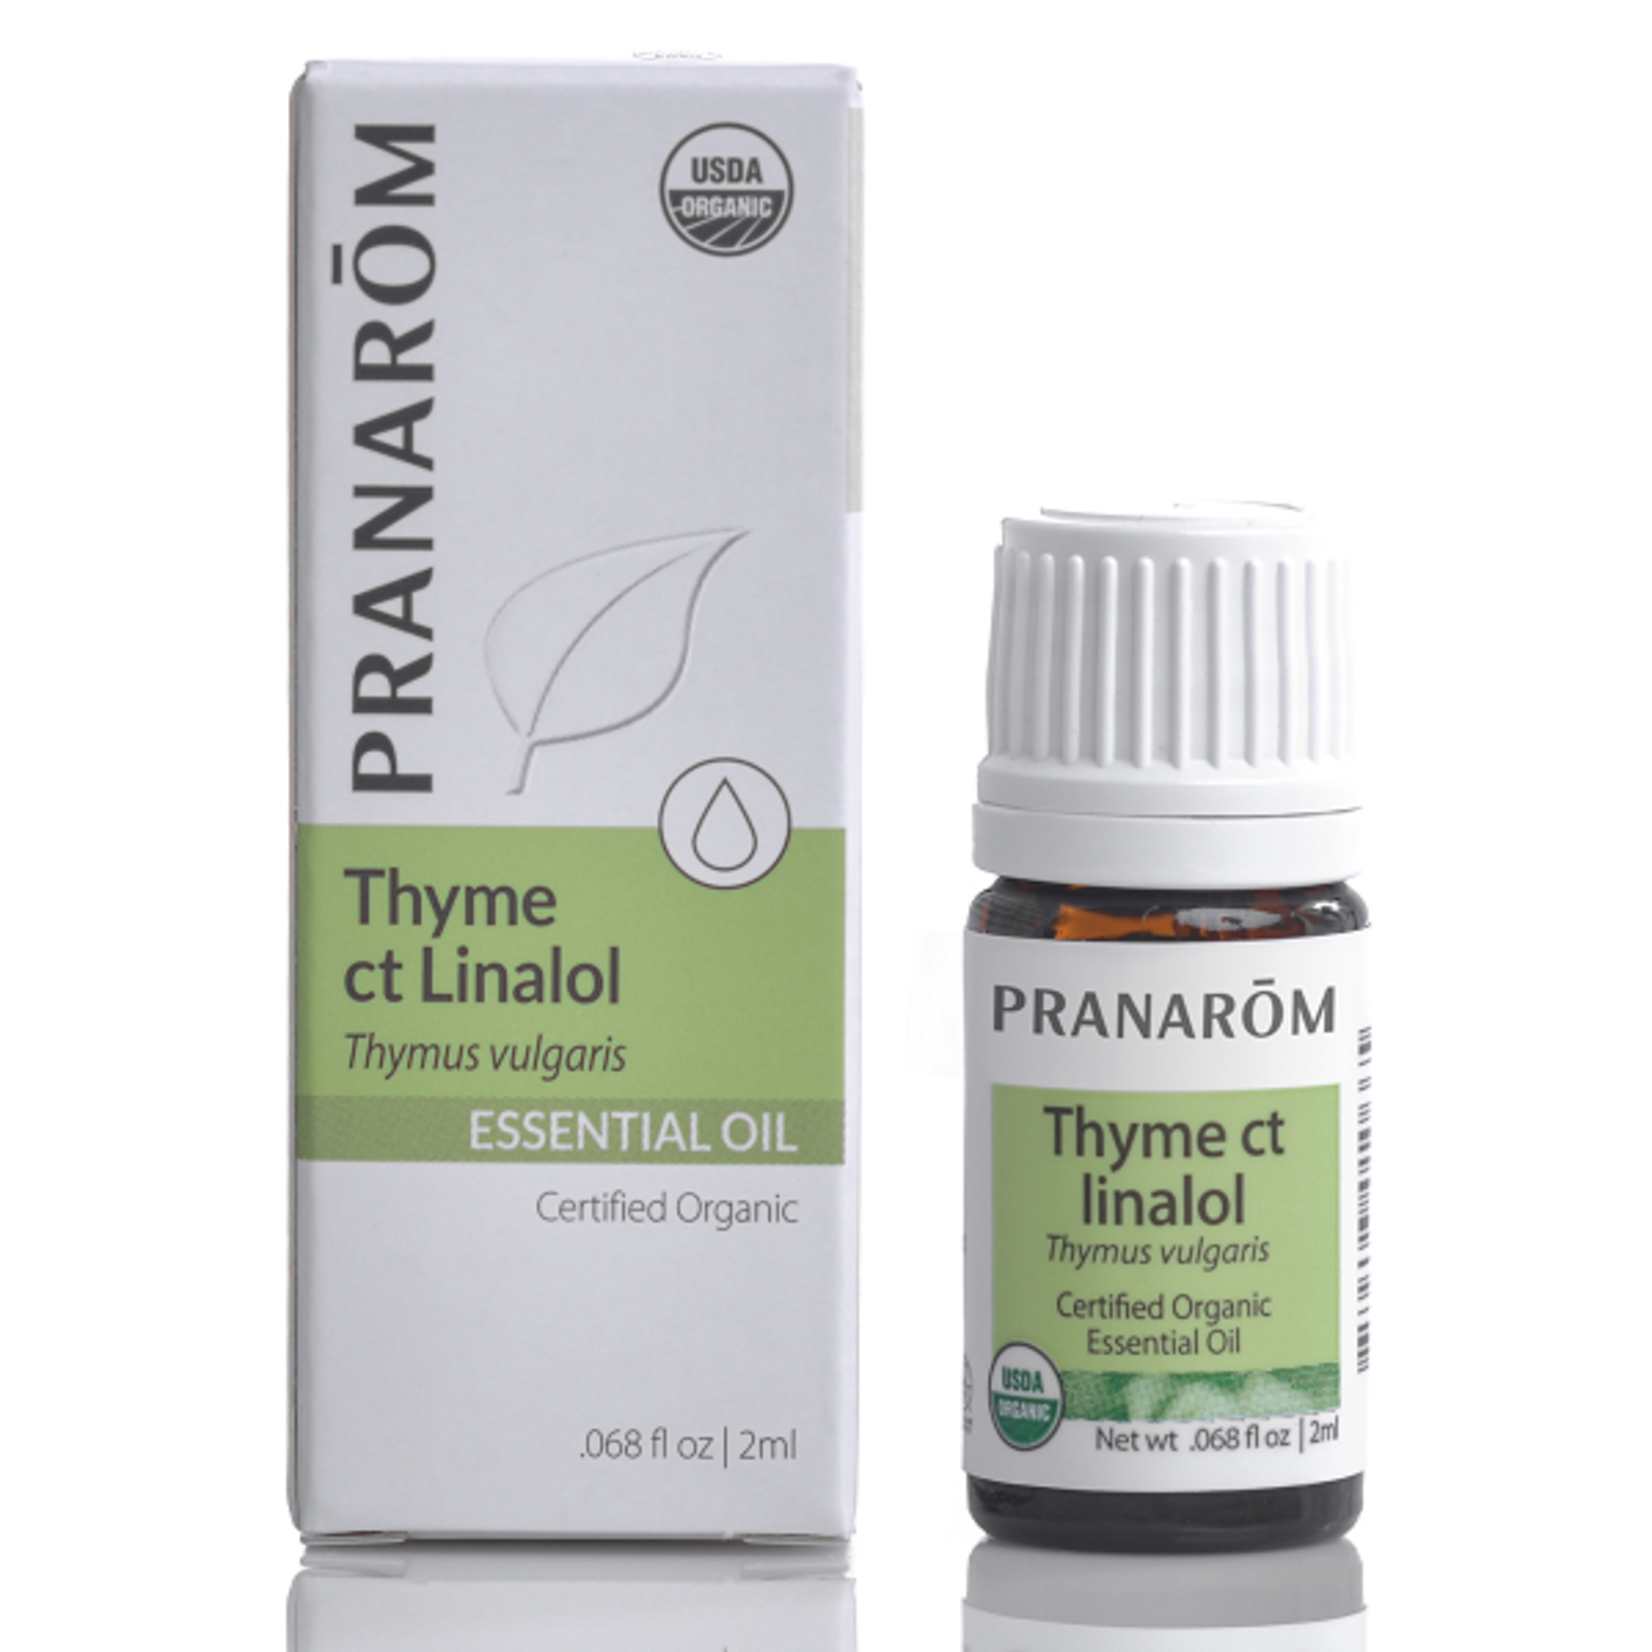 Pranarom Pranarom - Thyme Ct Linalol - 5 ml